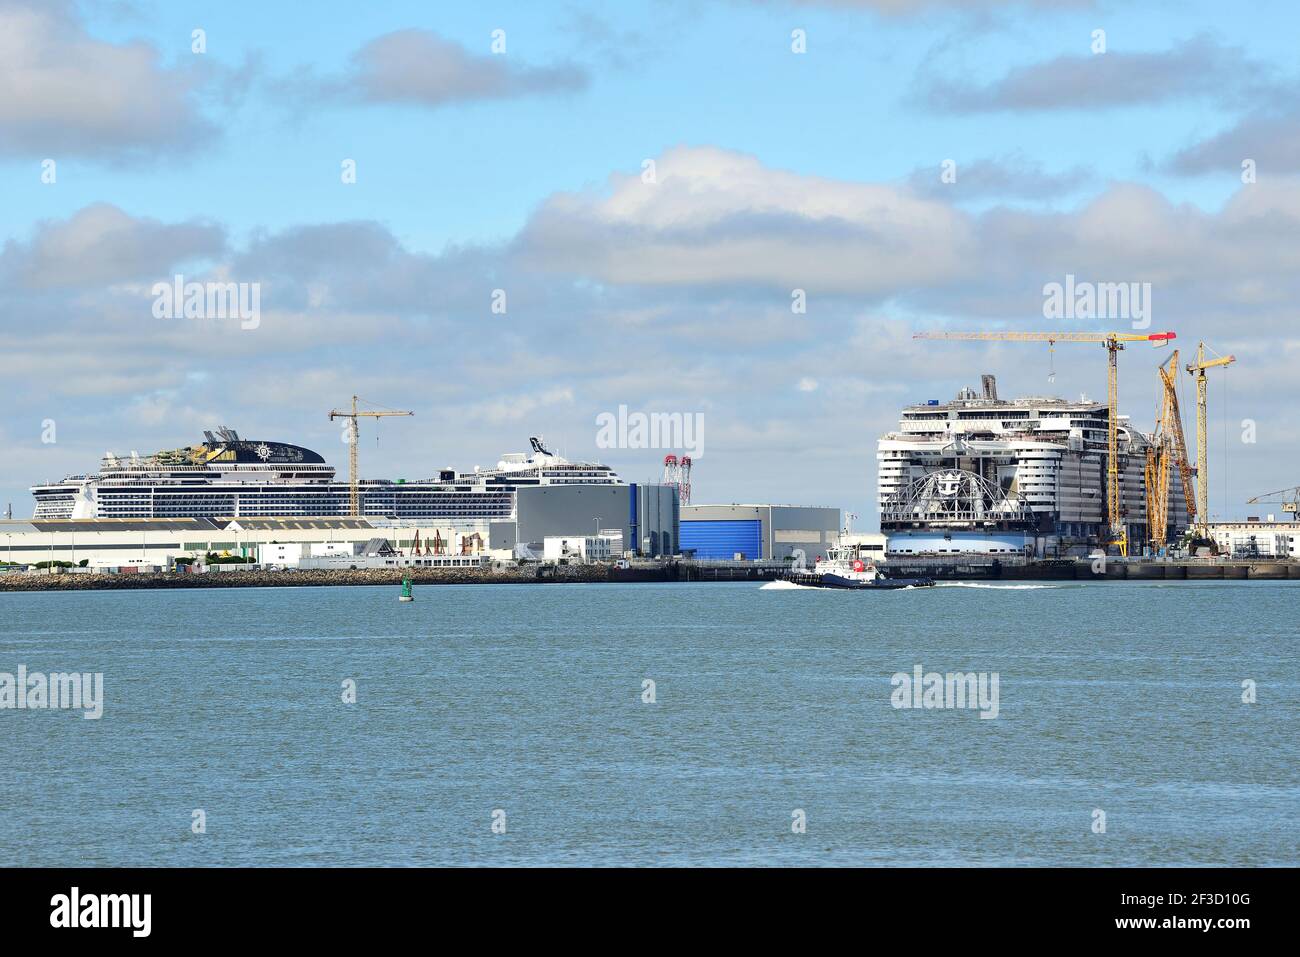 Saint-Nazaire (Francia nord-occidentale): Nave in costruzione per MSC Cruises e Royal Caribbean presso i cantieri navali "chantier naval de l’Atlantique" Foto Stock